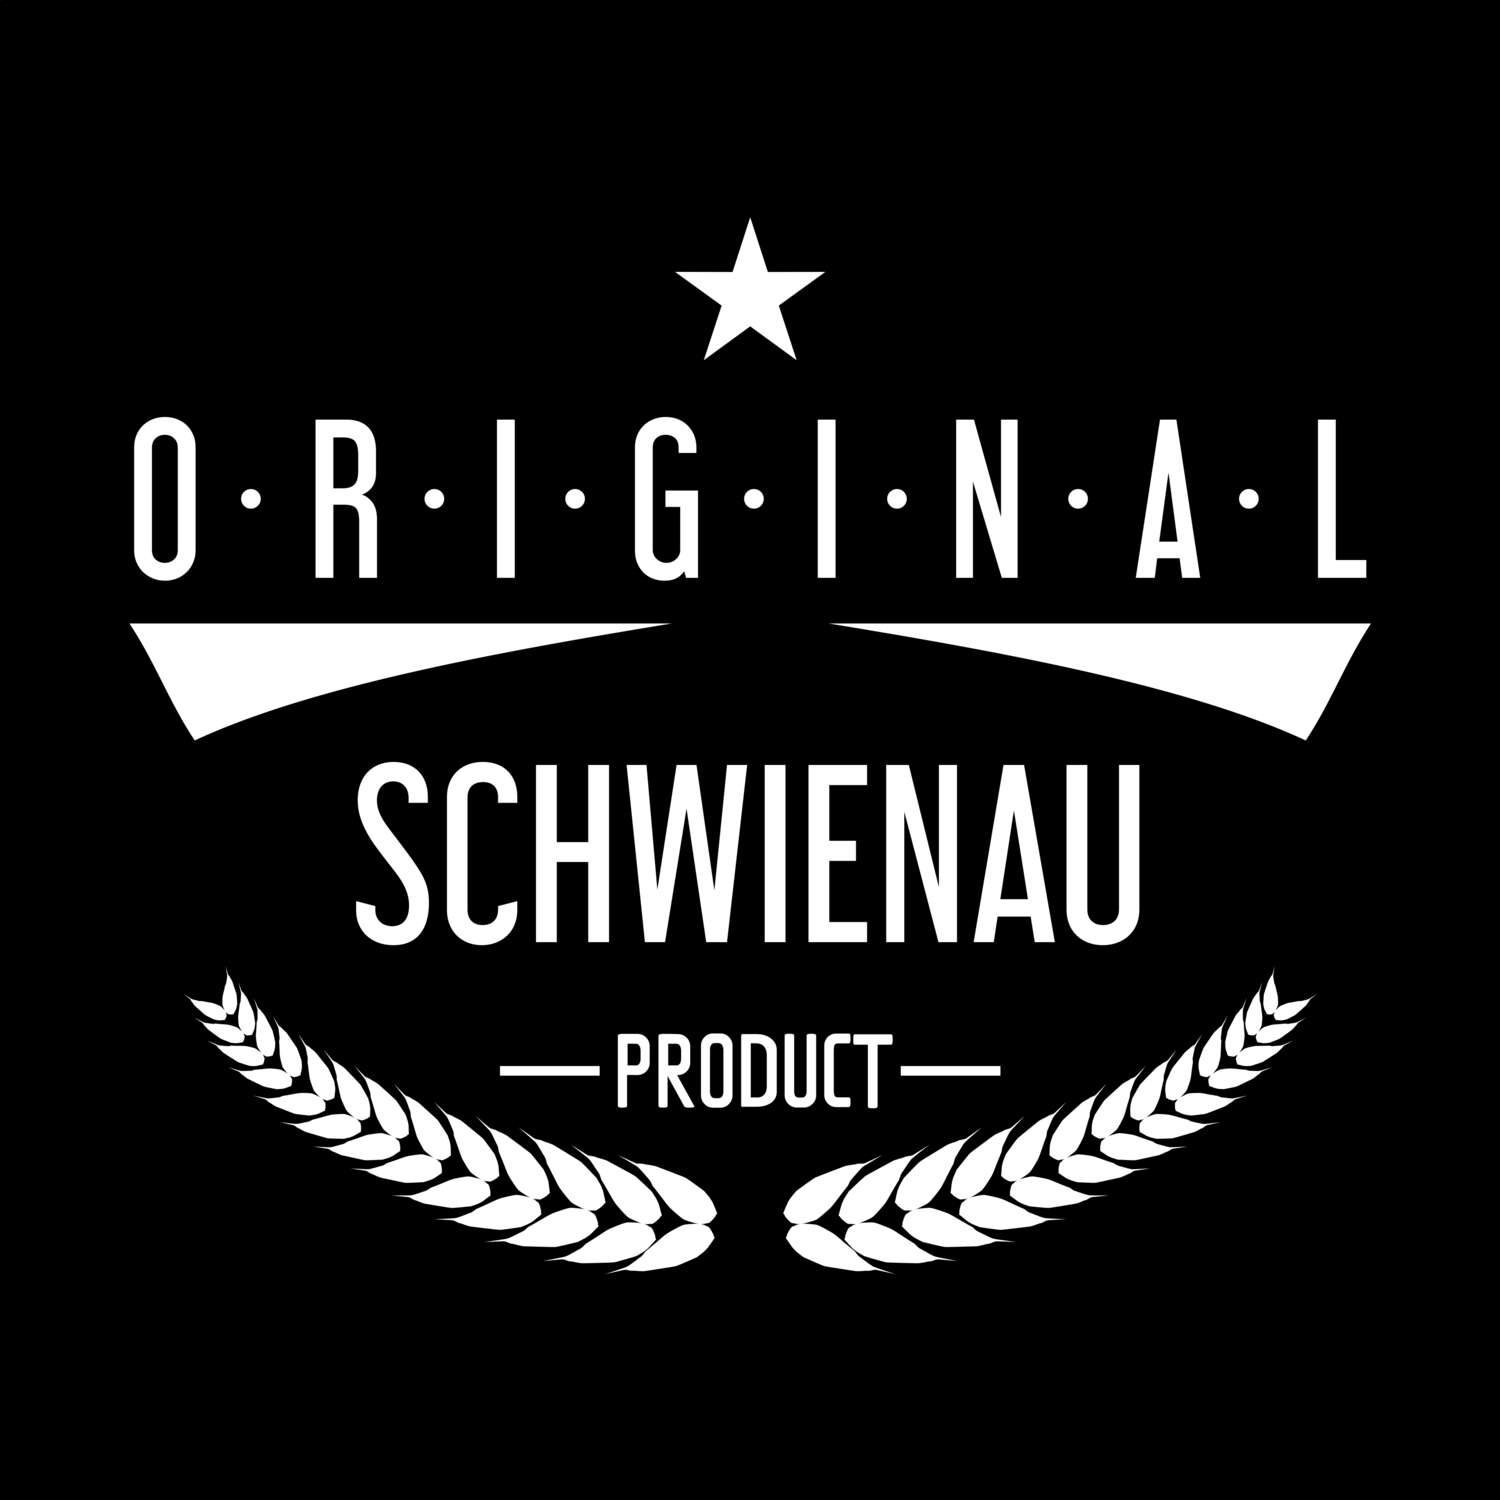 Schwienau T-Shirt »Original Product«